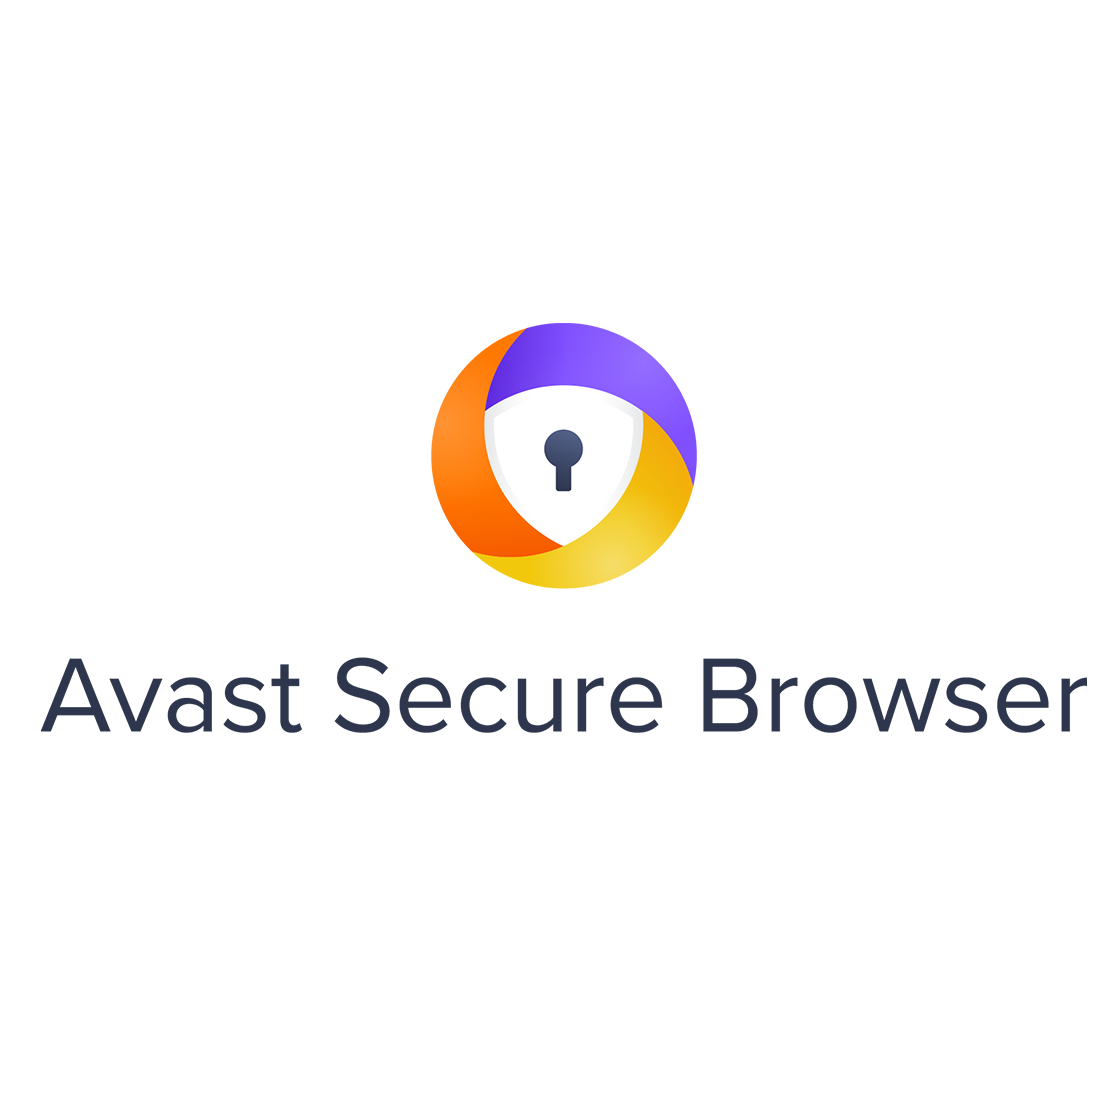 تكامل وكيل المتصفح الآمن من Avast